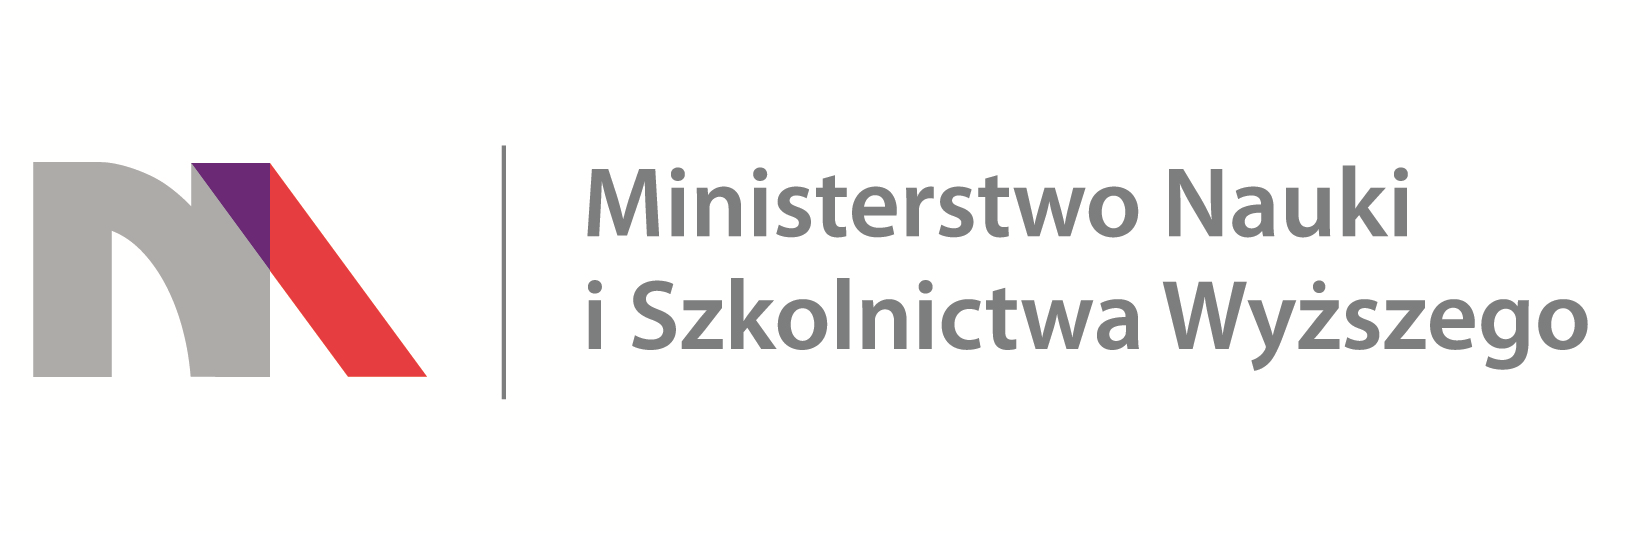 Logotyp Ministerstwa Nauki i Szkolnictwa Wyższego.